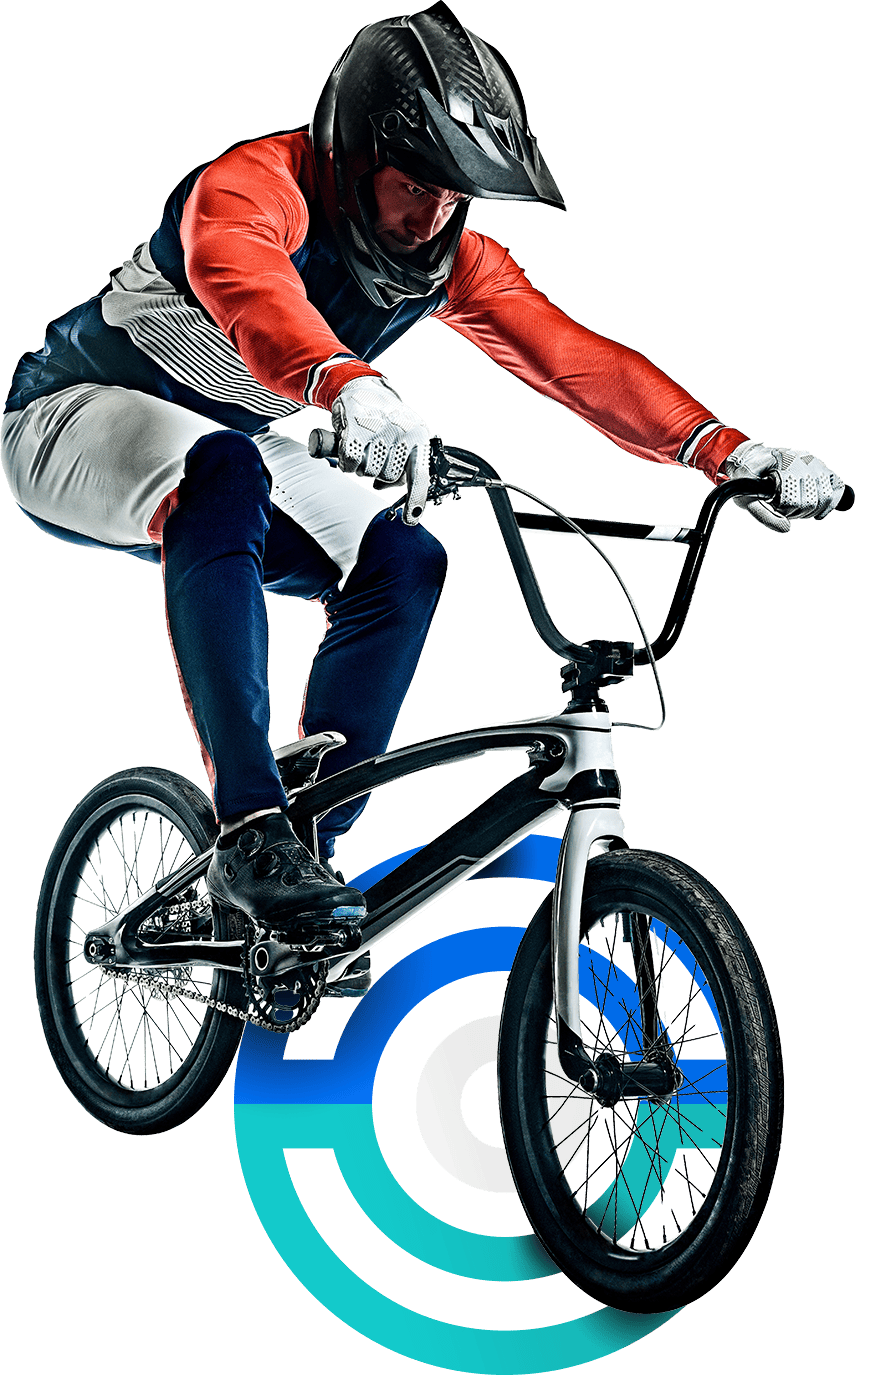 En la imagen, un ciclista conduce una BMX. Lleva casco, viste un uniforme azul, rojo y blanco, además de guantes. Está próximo a realizar una pirueta. 